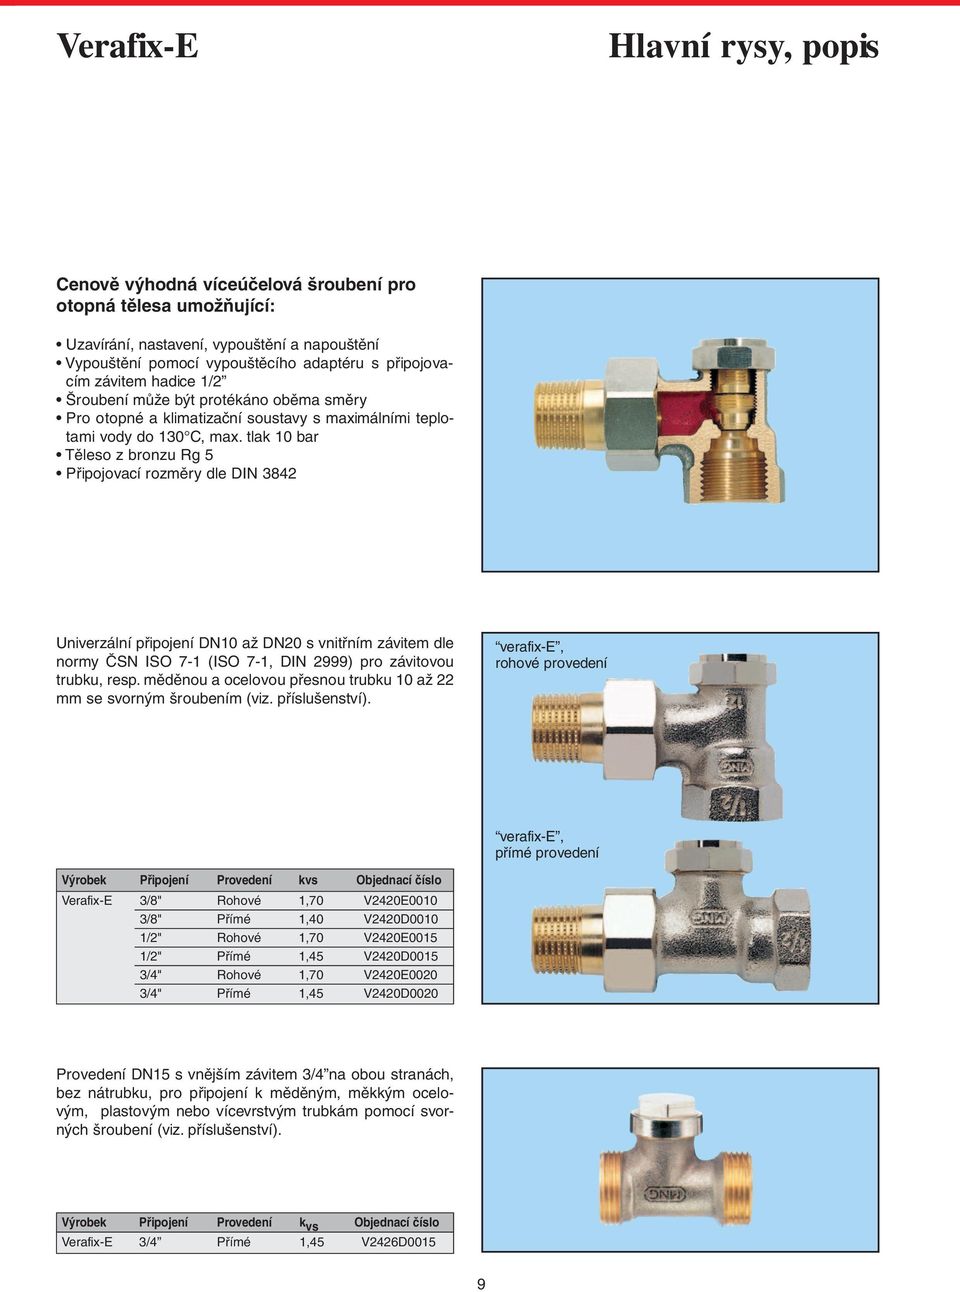 tlak 10 bar Těleso z bronzu Rg 5 Připojovací rozměry dle DIN 3842 Univerzální připojení DN10 až DN20 s vnitřním závitem dle normy ČSN ISO 7-1 (ISO 7-1, DIN 2999) pro závitovou trubku, resp.